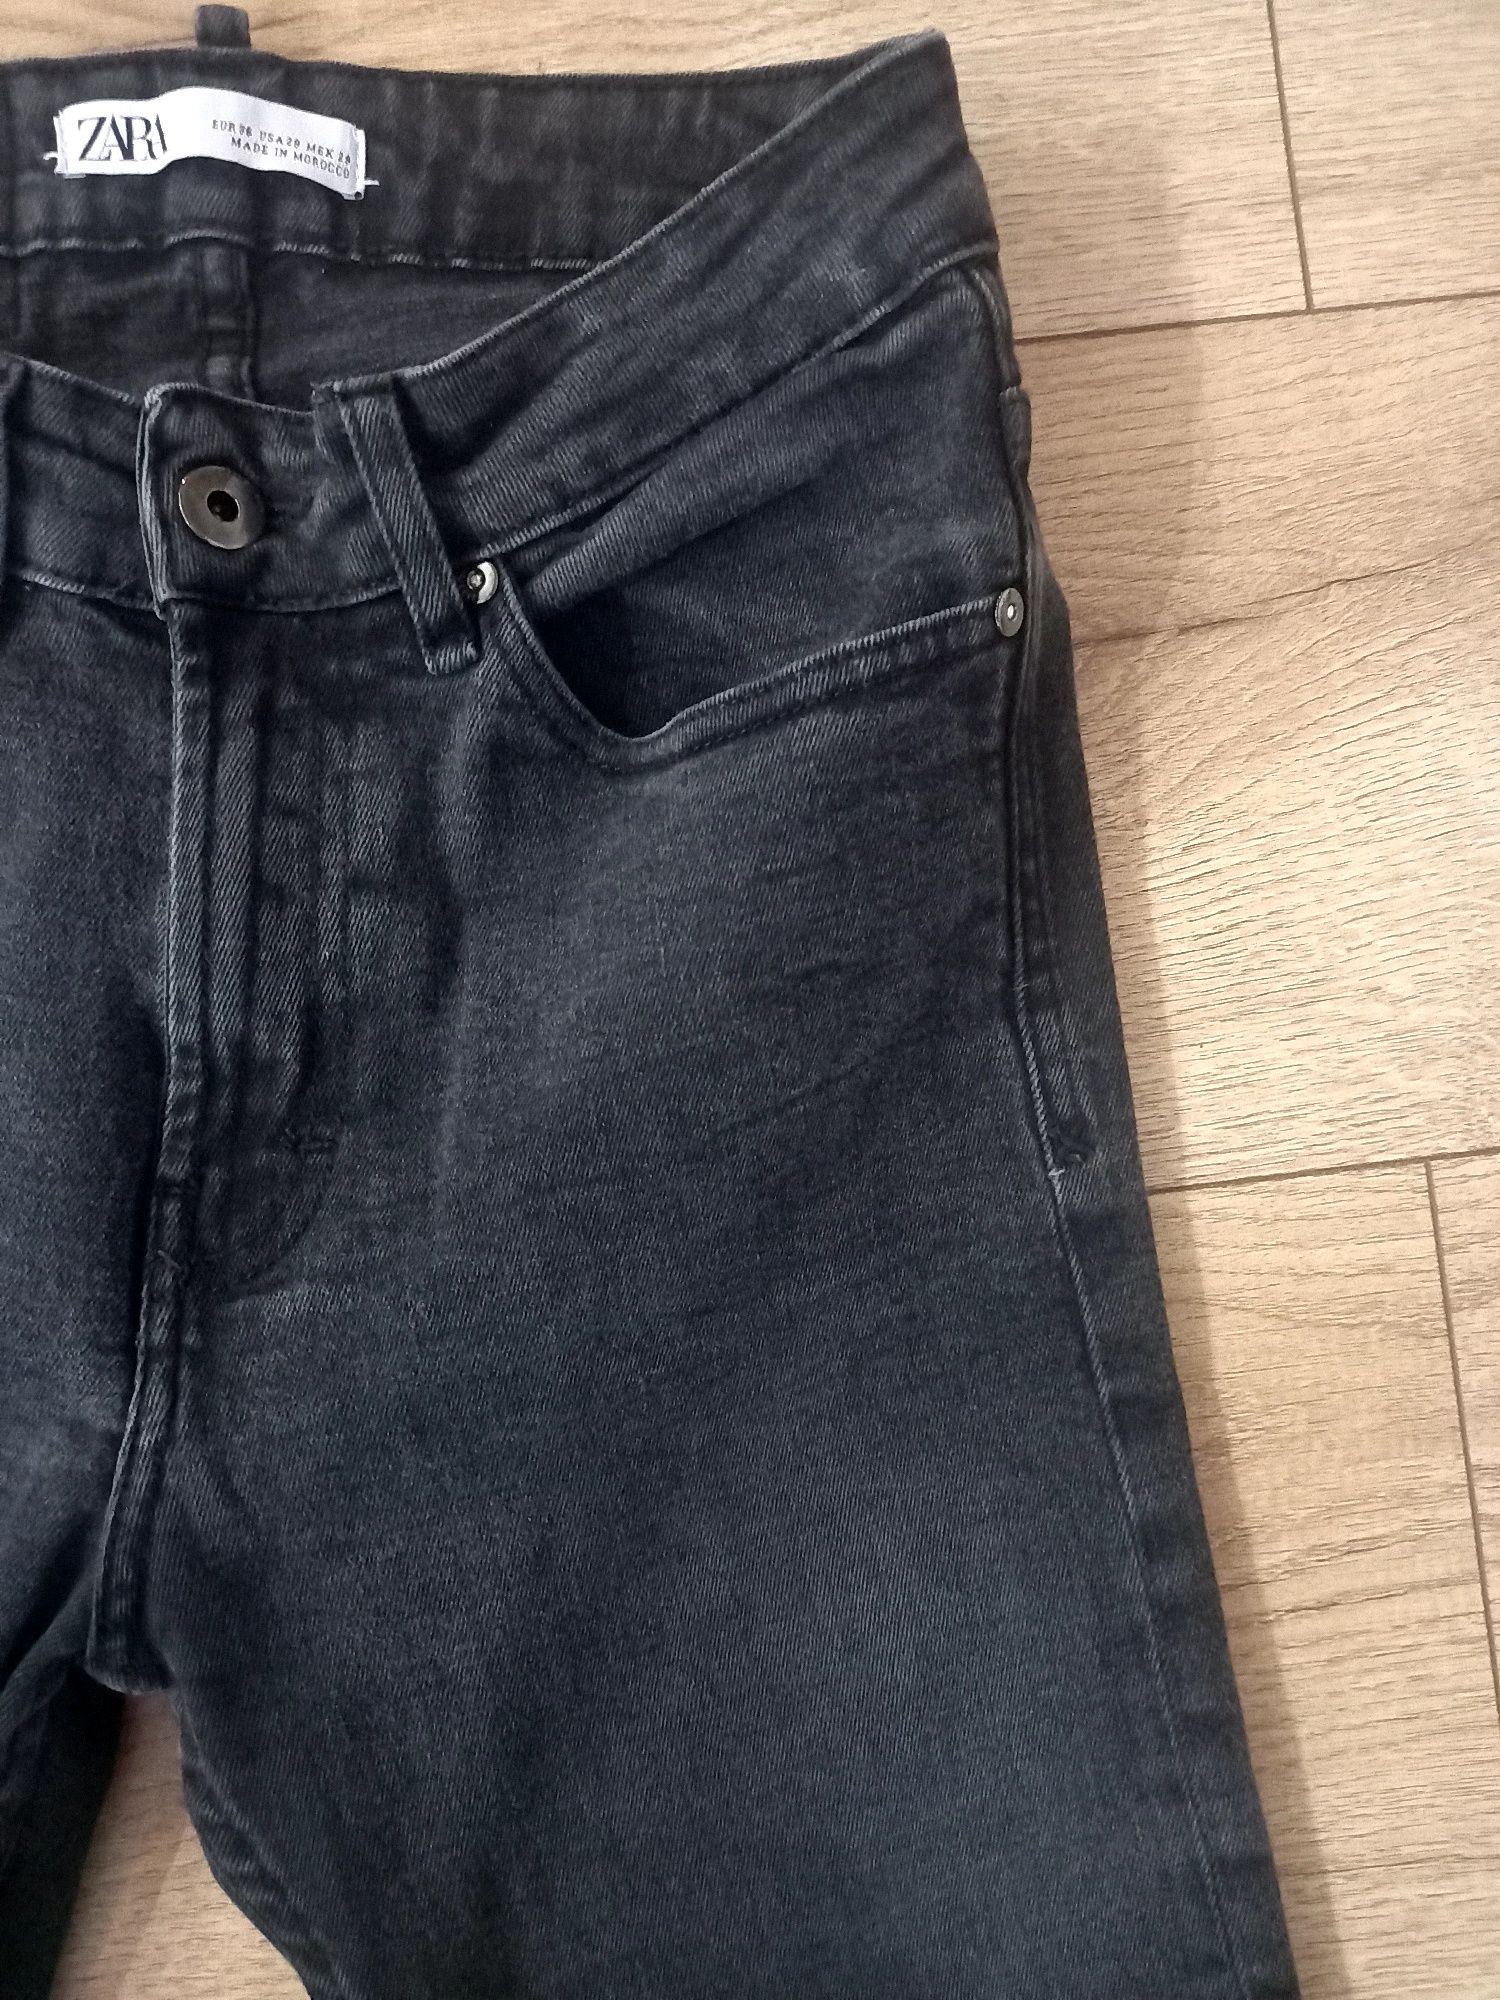 Spodnie jeansy skinny męskie chłopięce skinny czarno-szare Zara r. 36